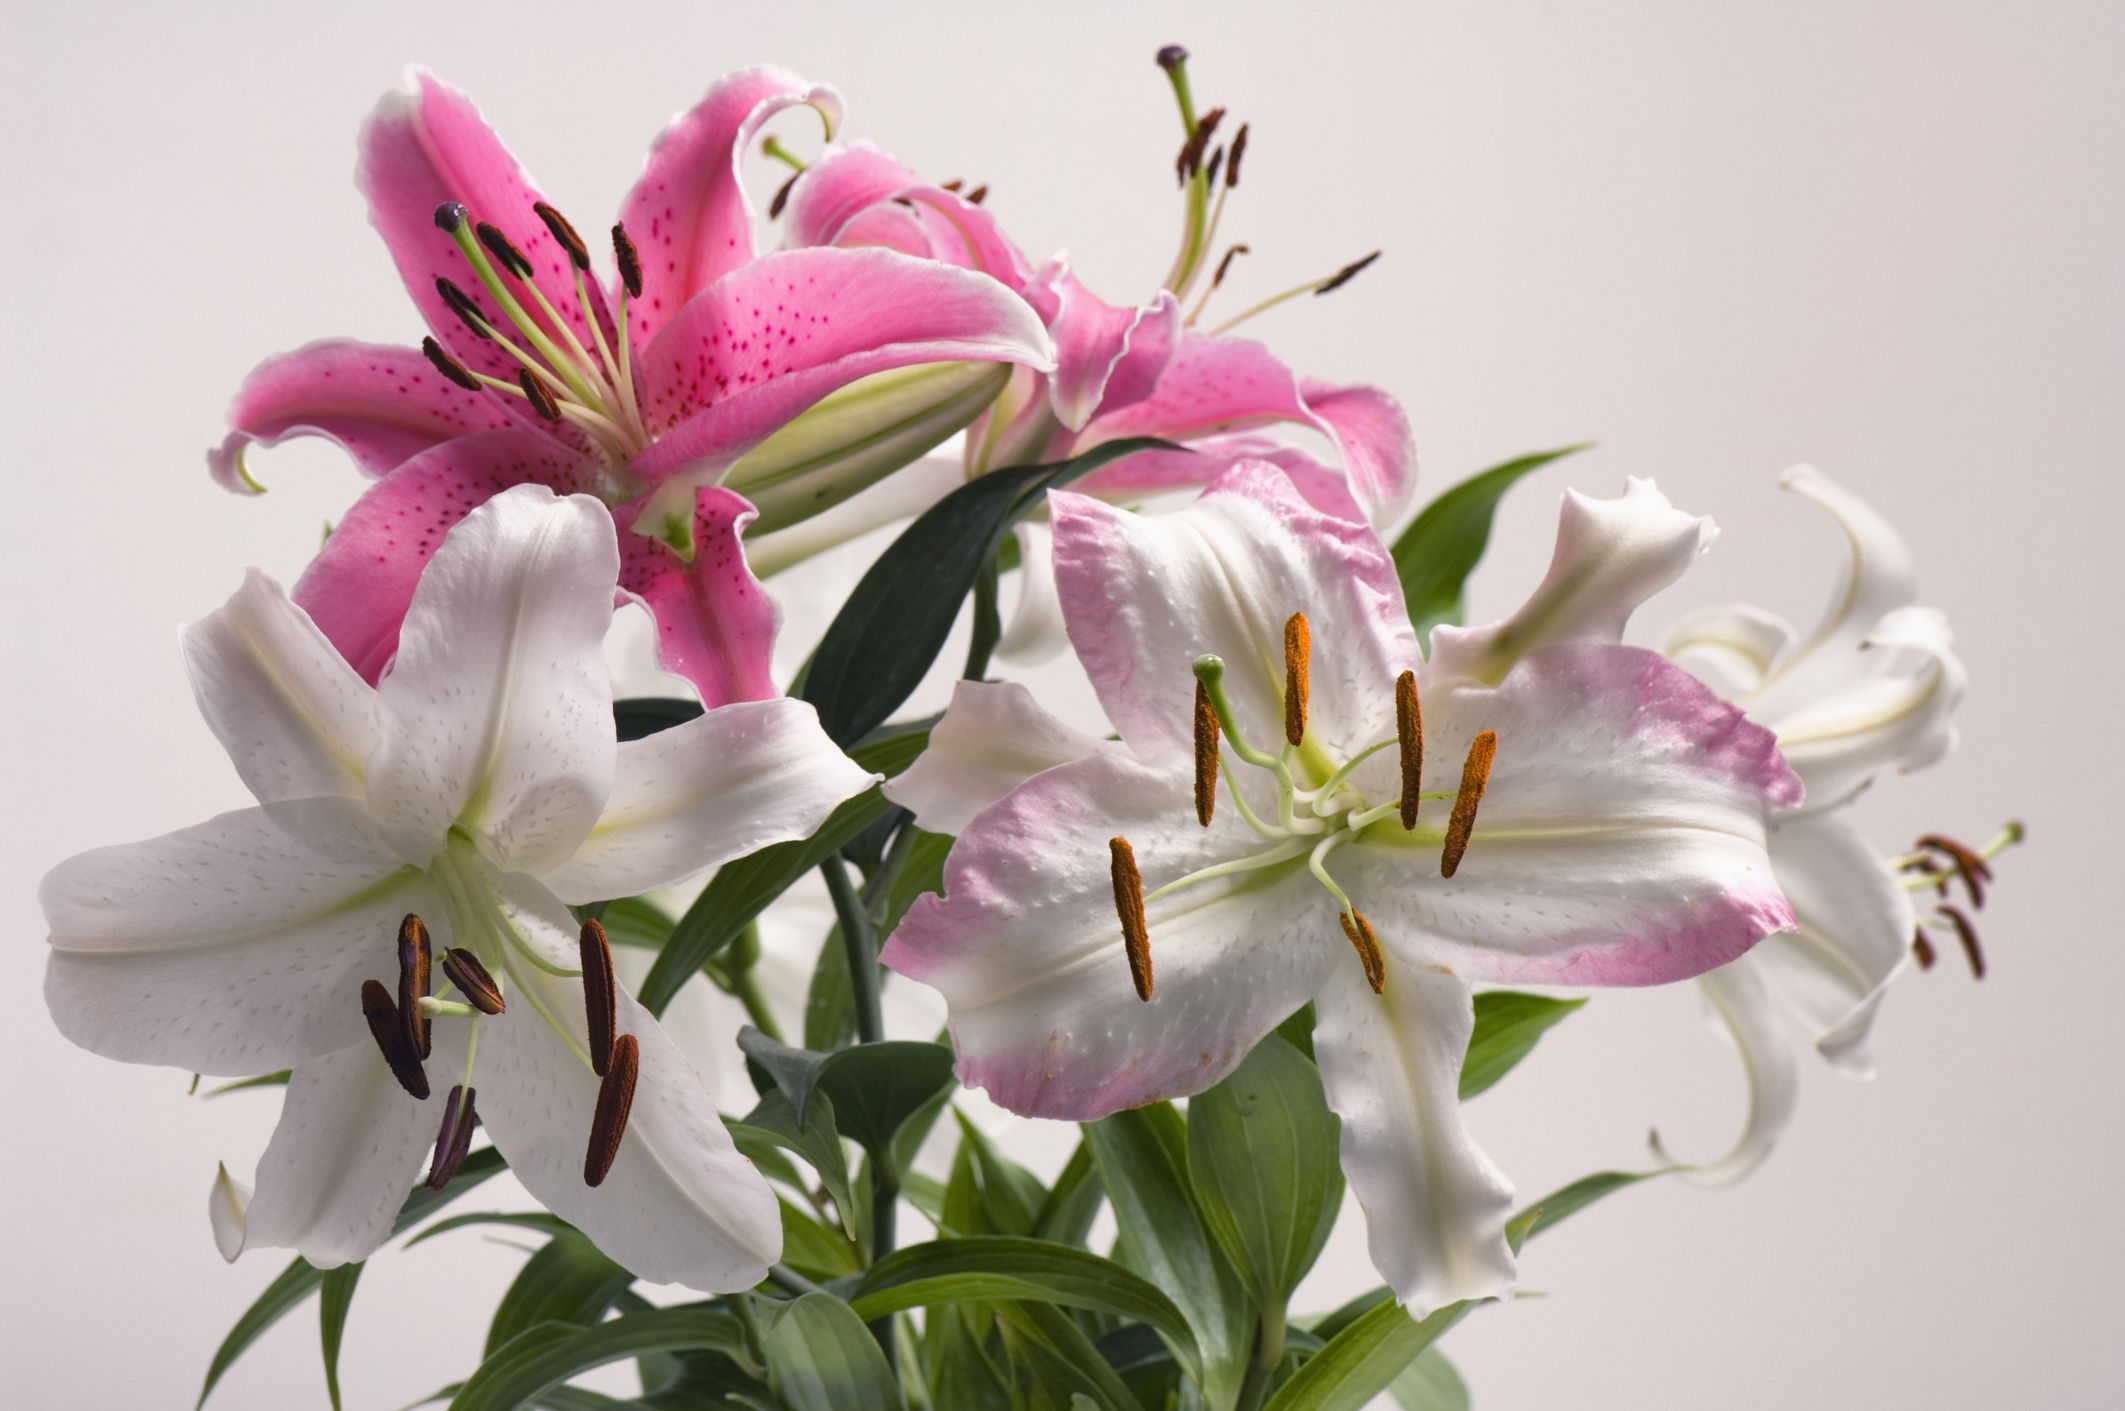 Hoa Bách Hợp đẹp - Những hình ảnh hoa Bách Hợp đẹp nhất